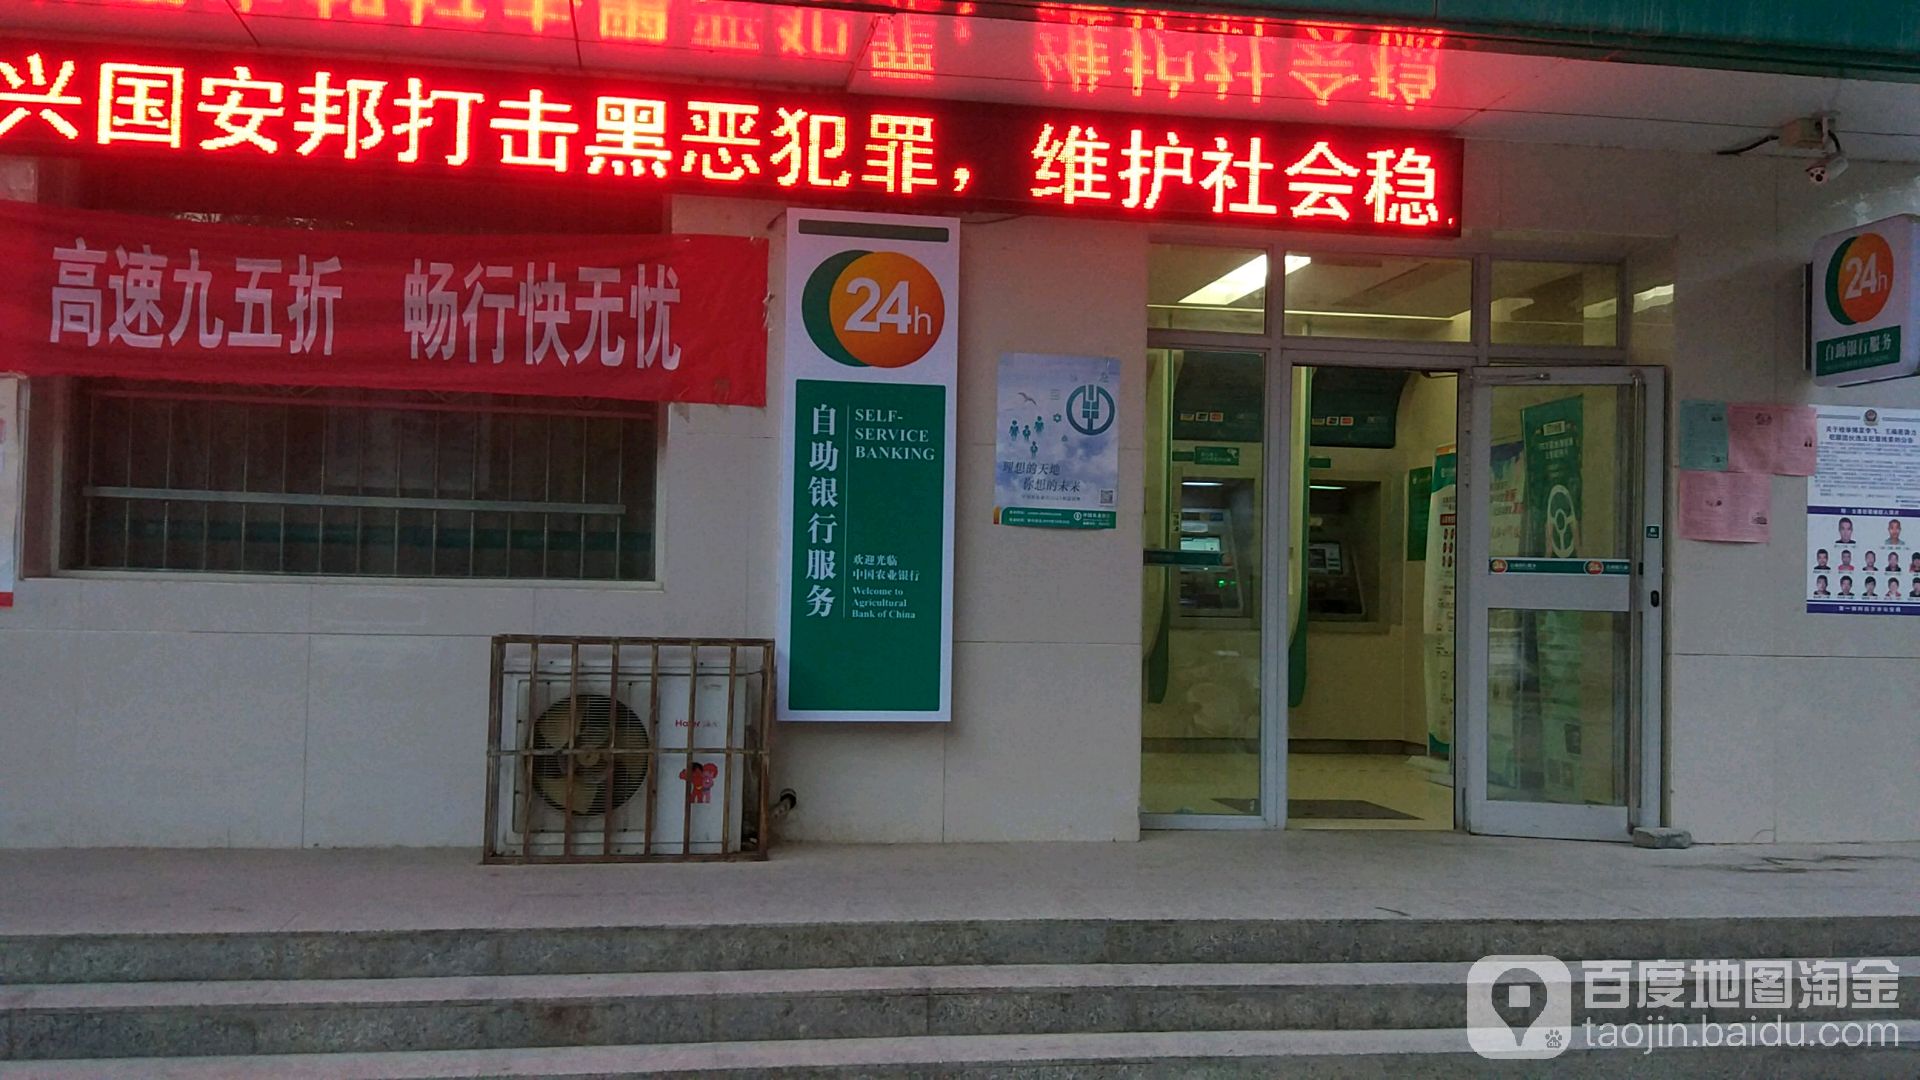 中国龙业银行24小时自助银行(塔里木大学支行)